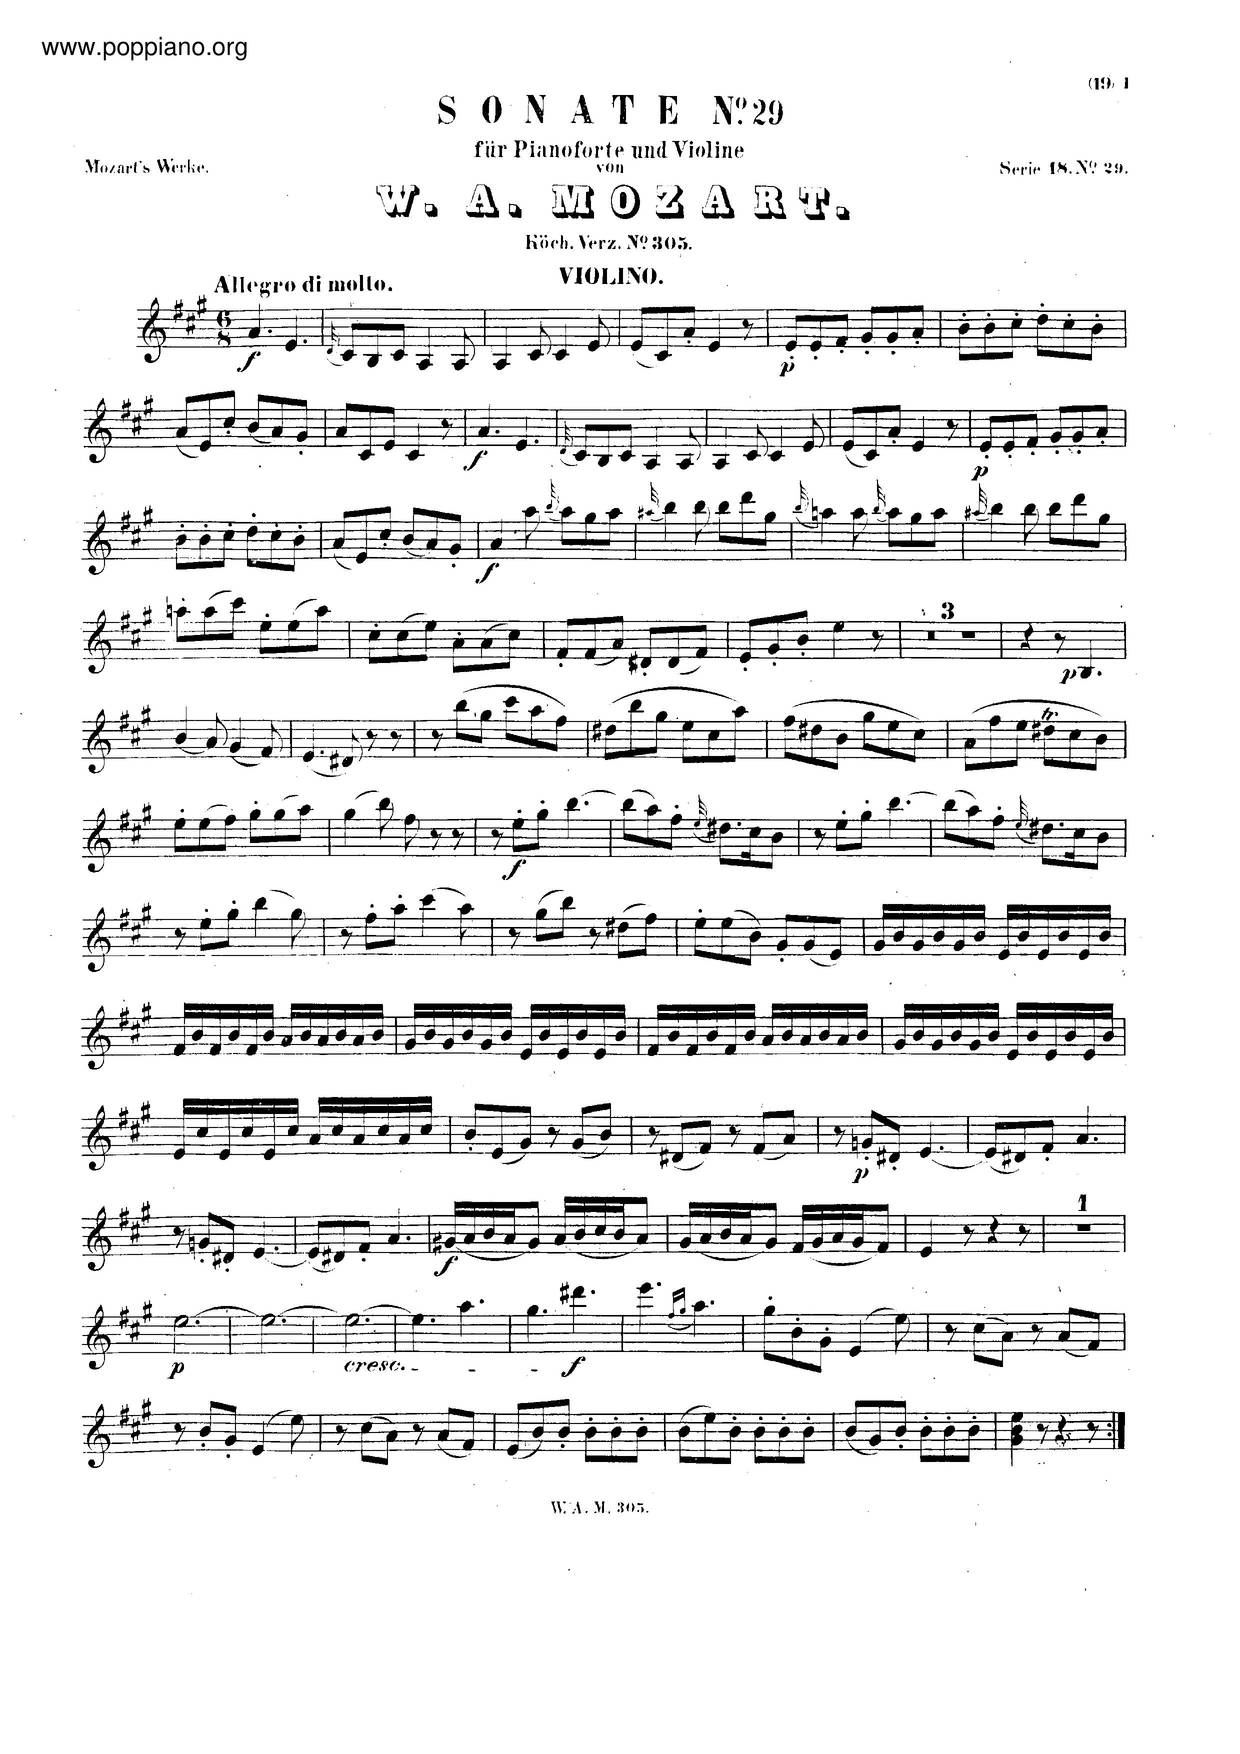 Violin Sonata In A Major, K. 305/293Dピアノ譜